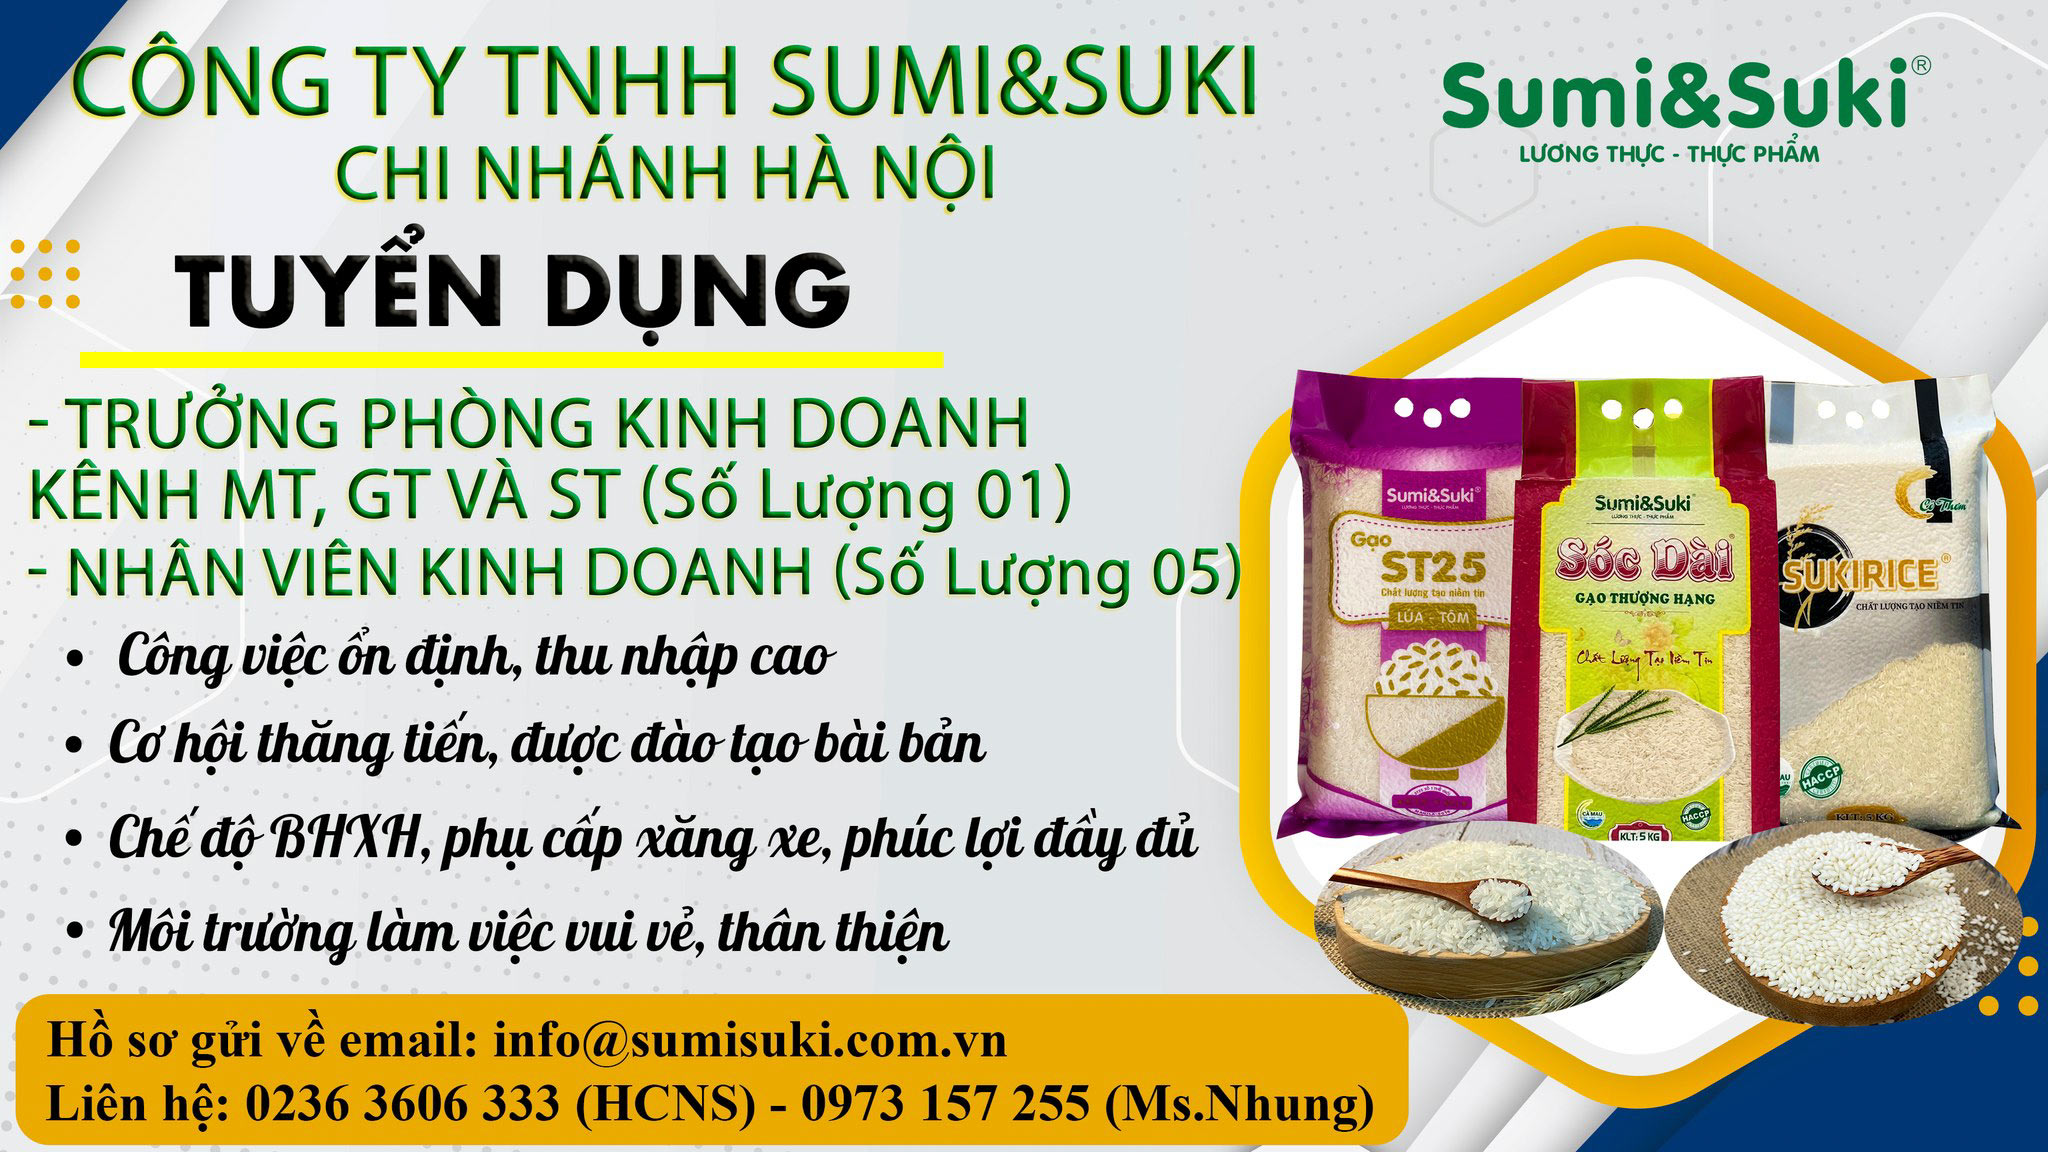 Sumi&Suki tuyển dụng kinh doanh chi nhánh Hà Nội 